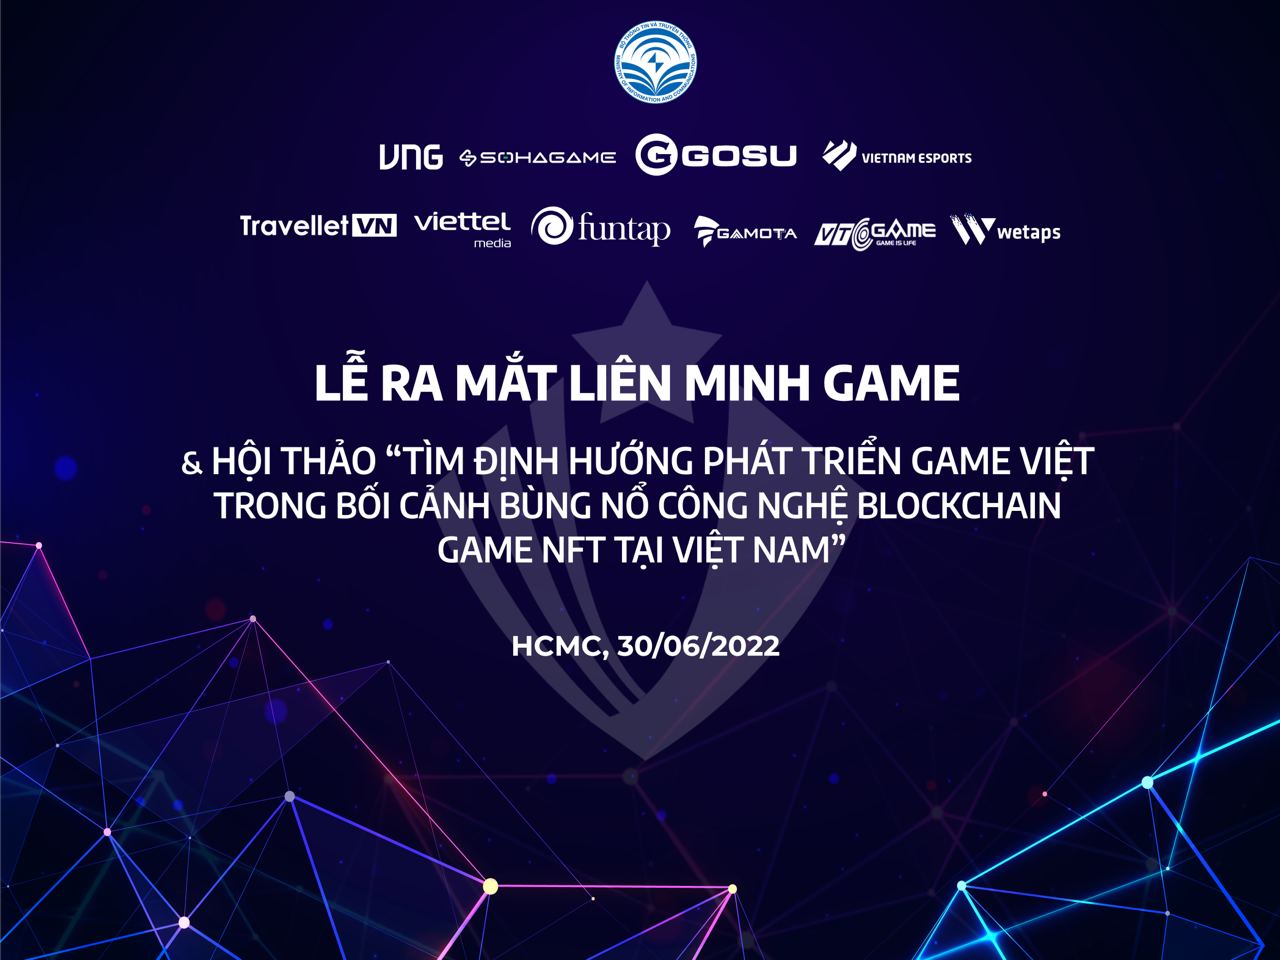 HOT: Sự kiện ra mắt Liên Minh Game và hội thảo định hướng phát triển game Việt